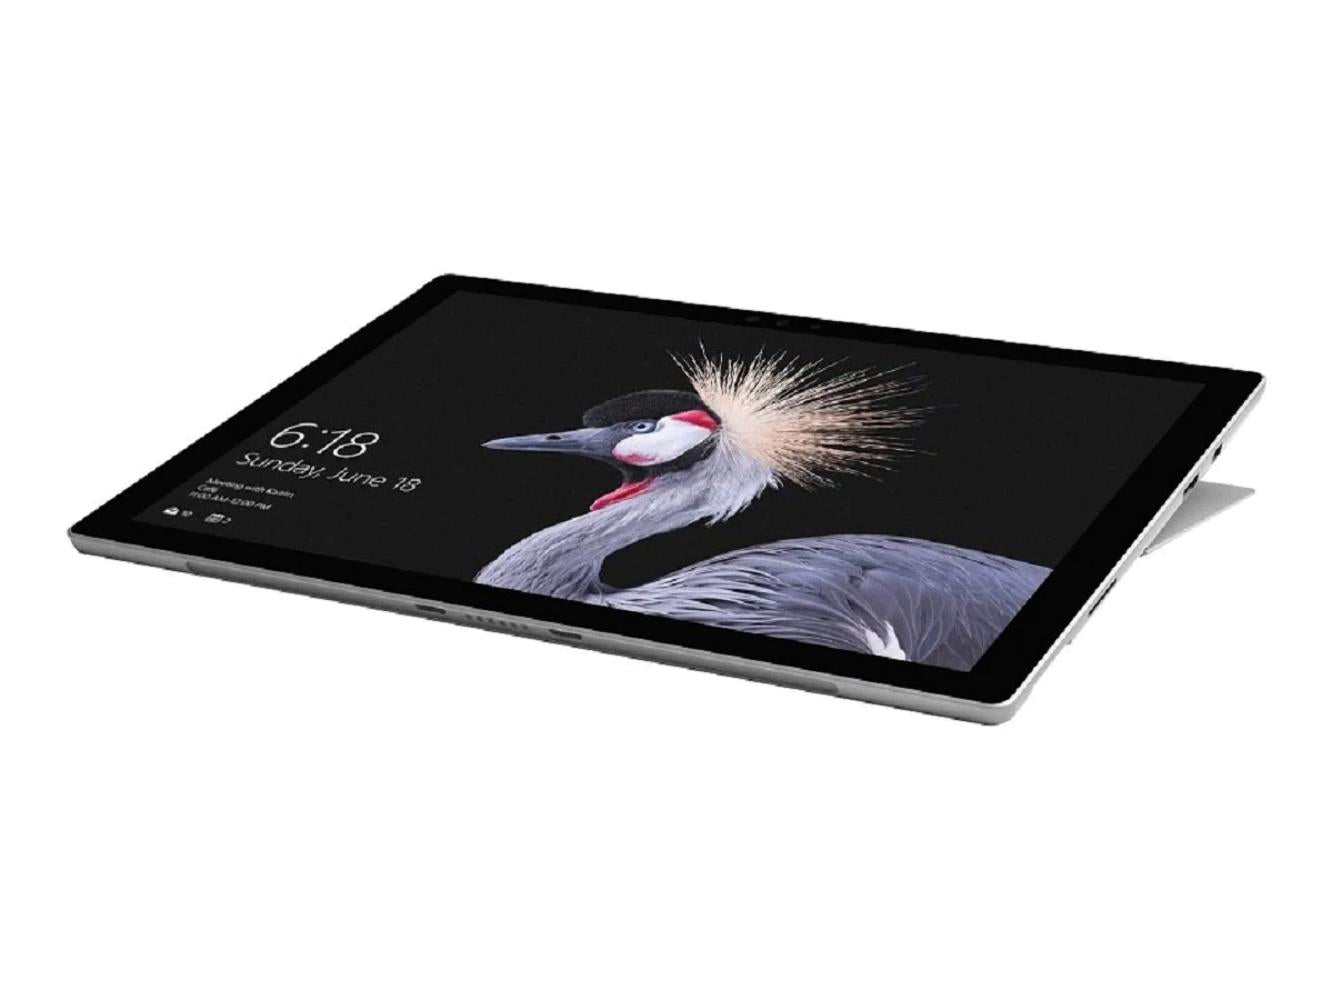 Microsoft Surface Pro 5 Intel Core i5-7300U 8GB DDR4 256GB SSD 12.1